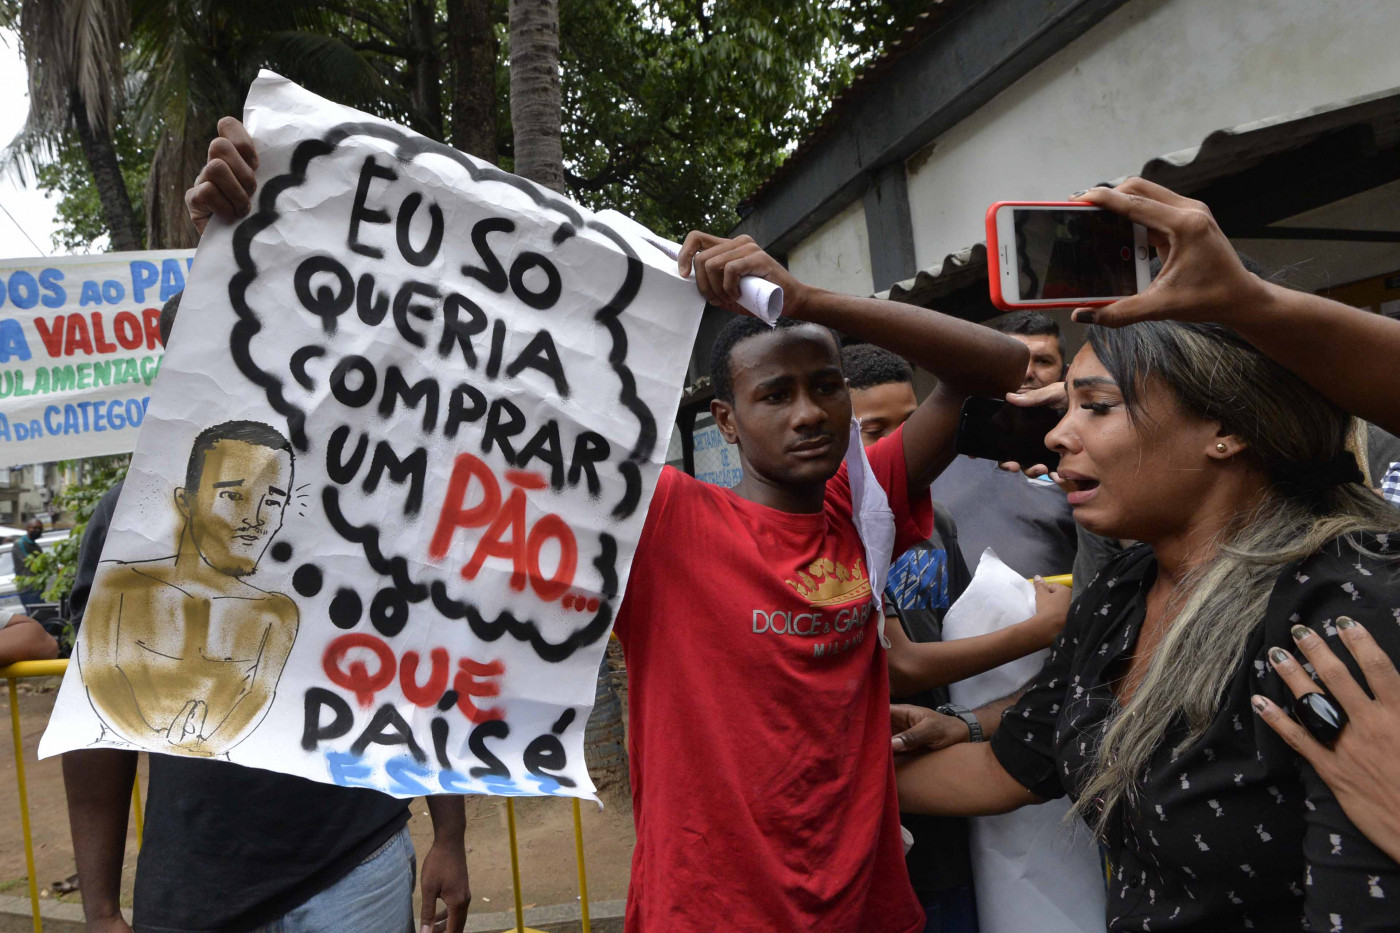 Yago Corrêa ergue cartaz que sua família havia protestado contra sua prisão, com a mensagem 'Eu só queria comprar um pão. Que país é esse?'